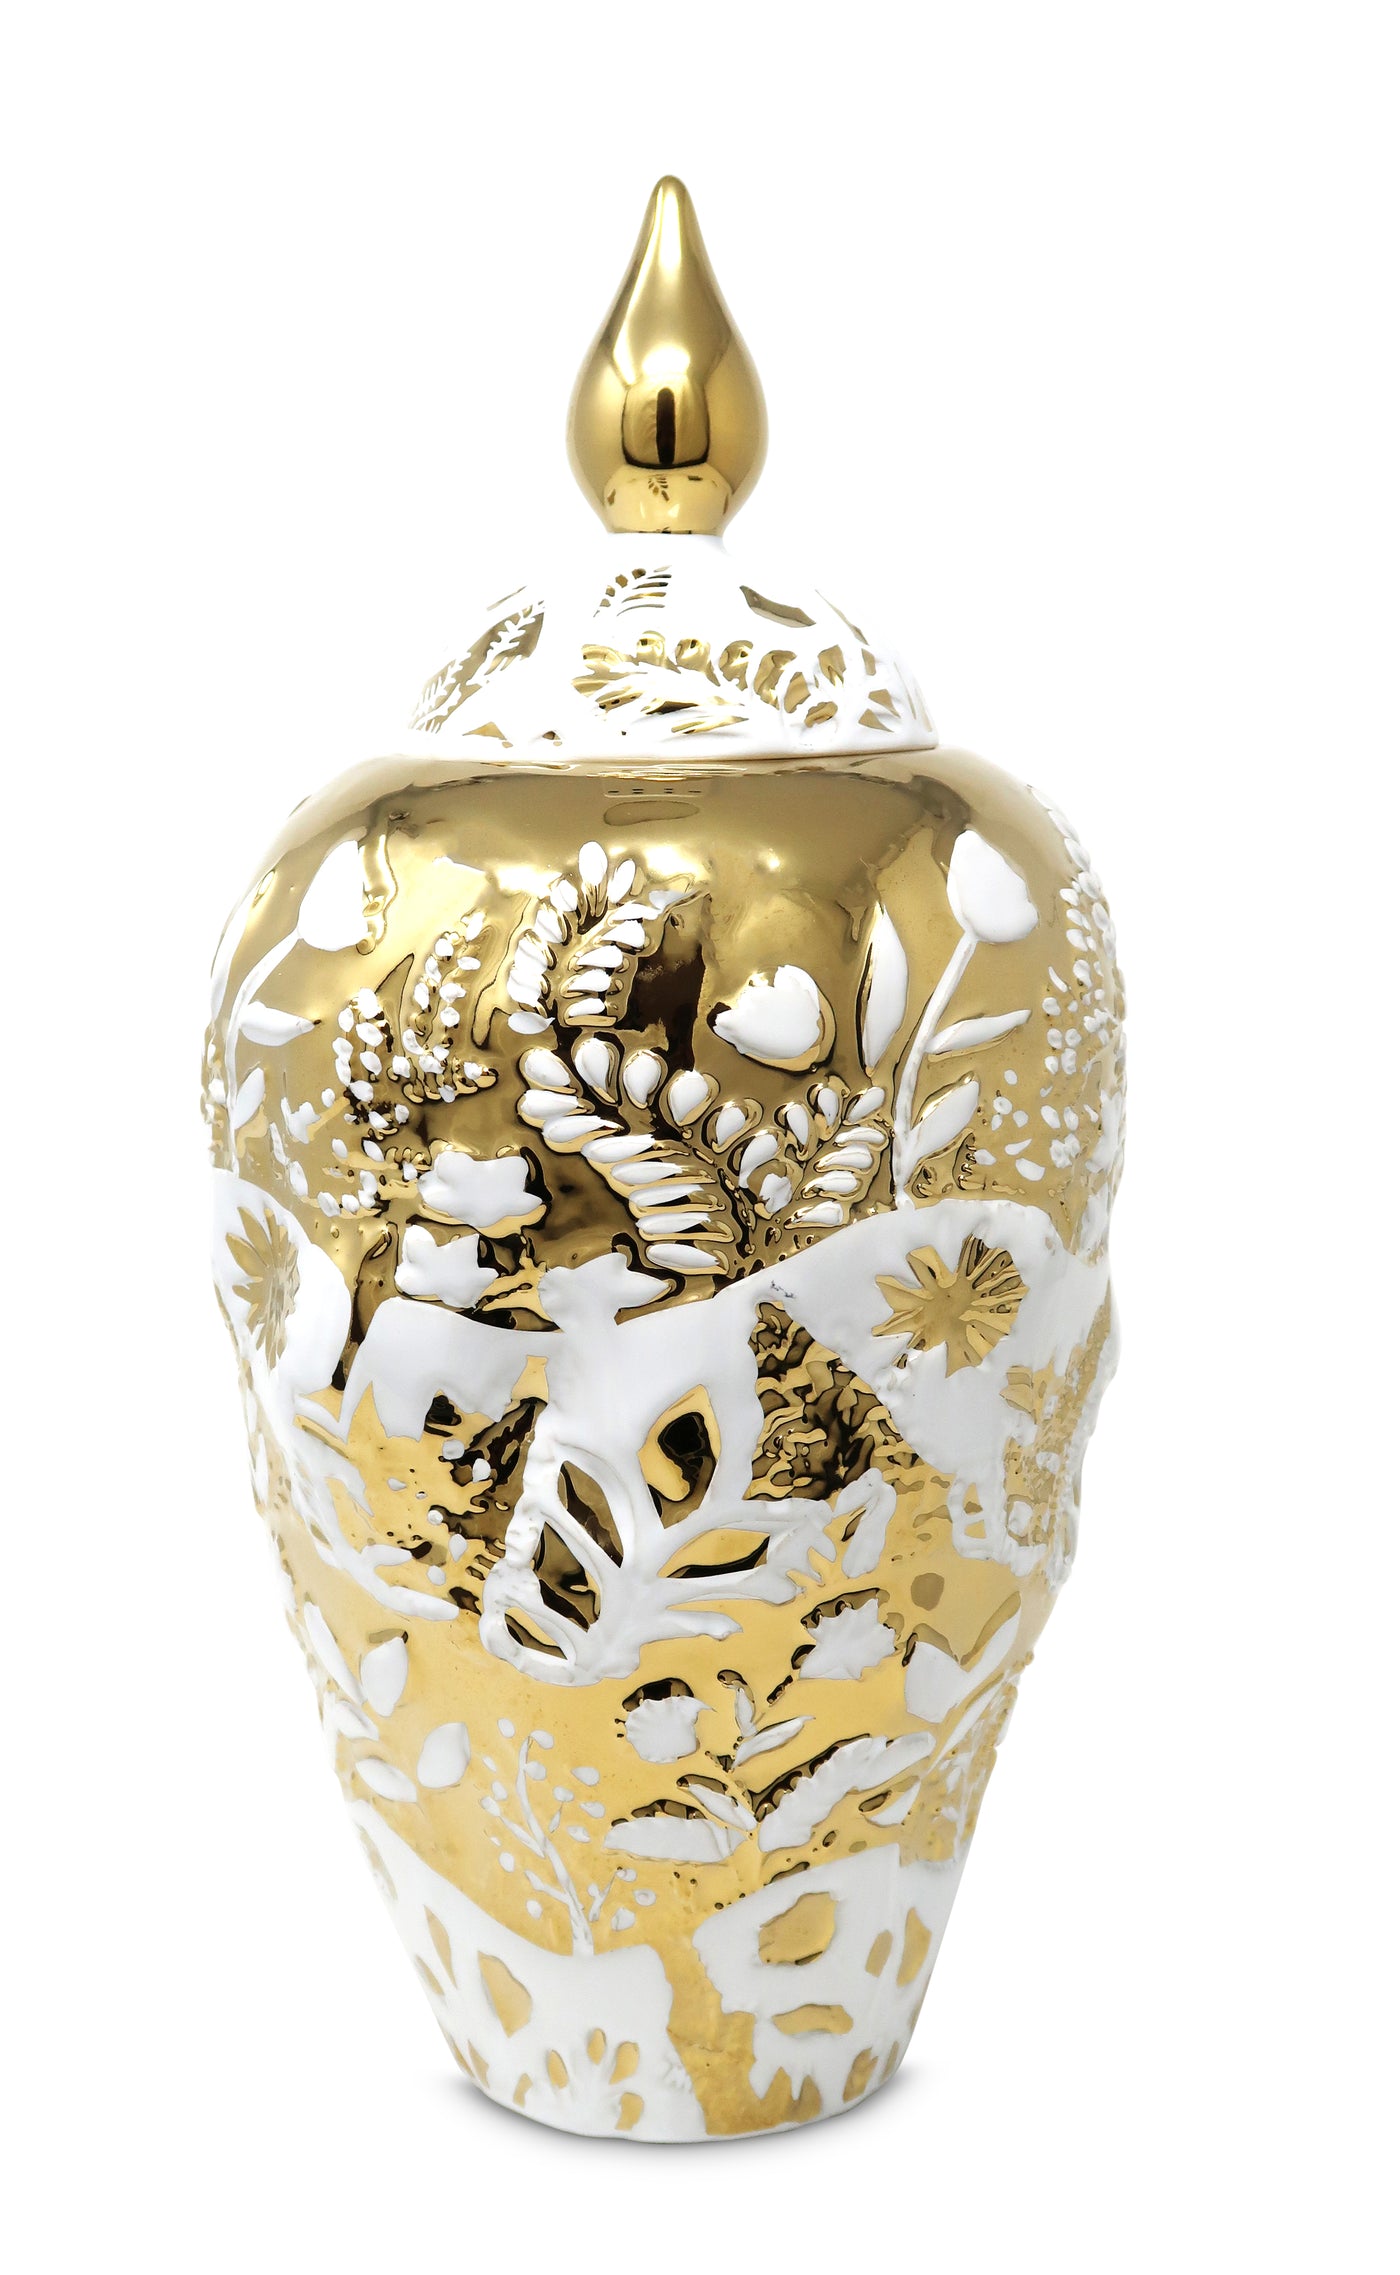 Ornate White and Gold Ginger Jar